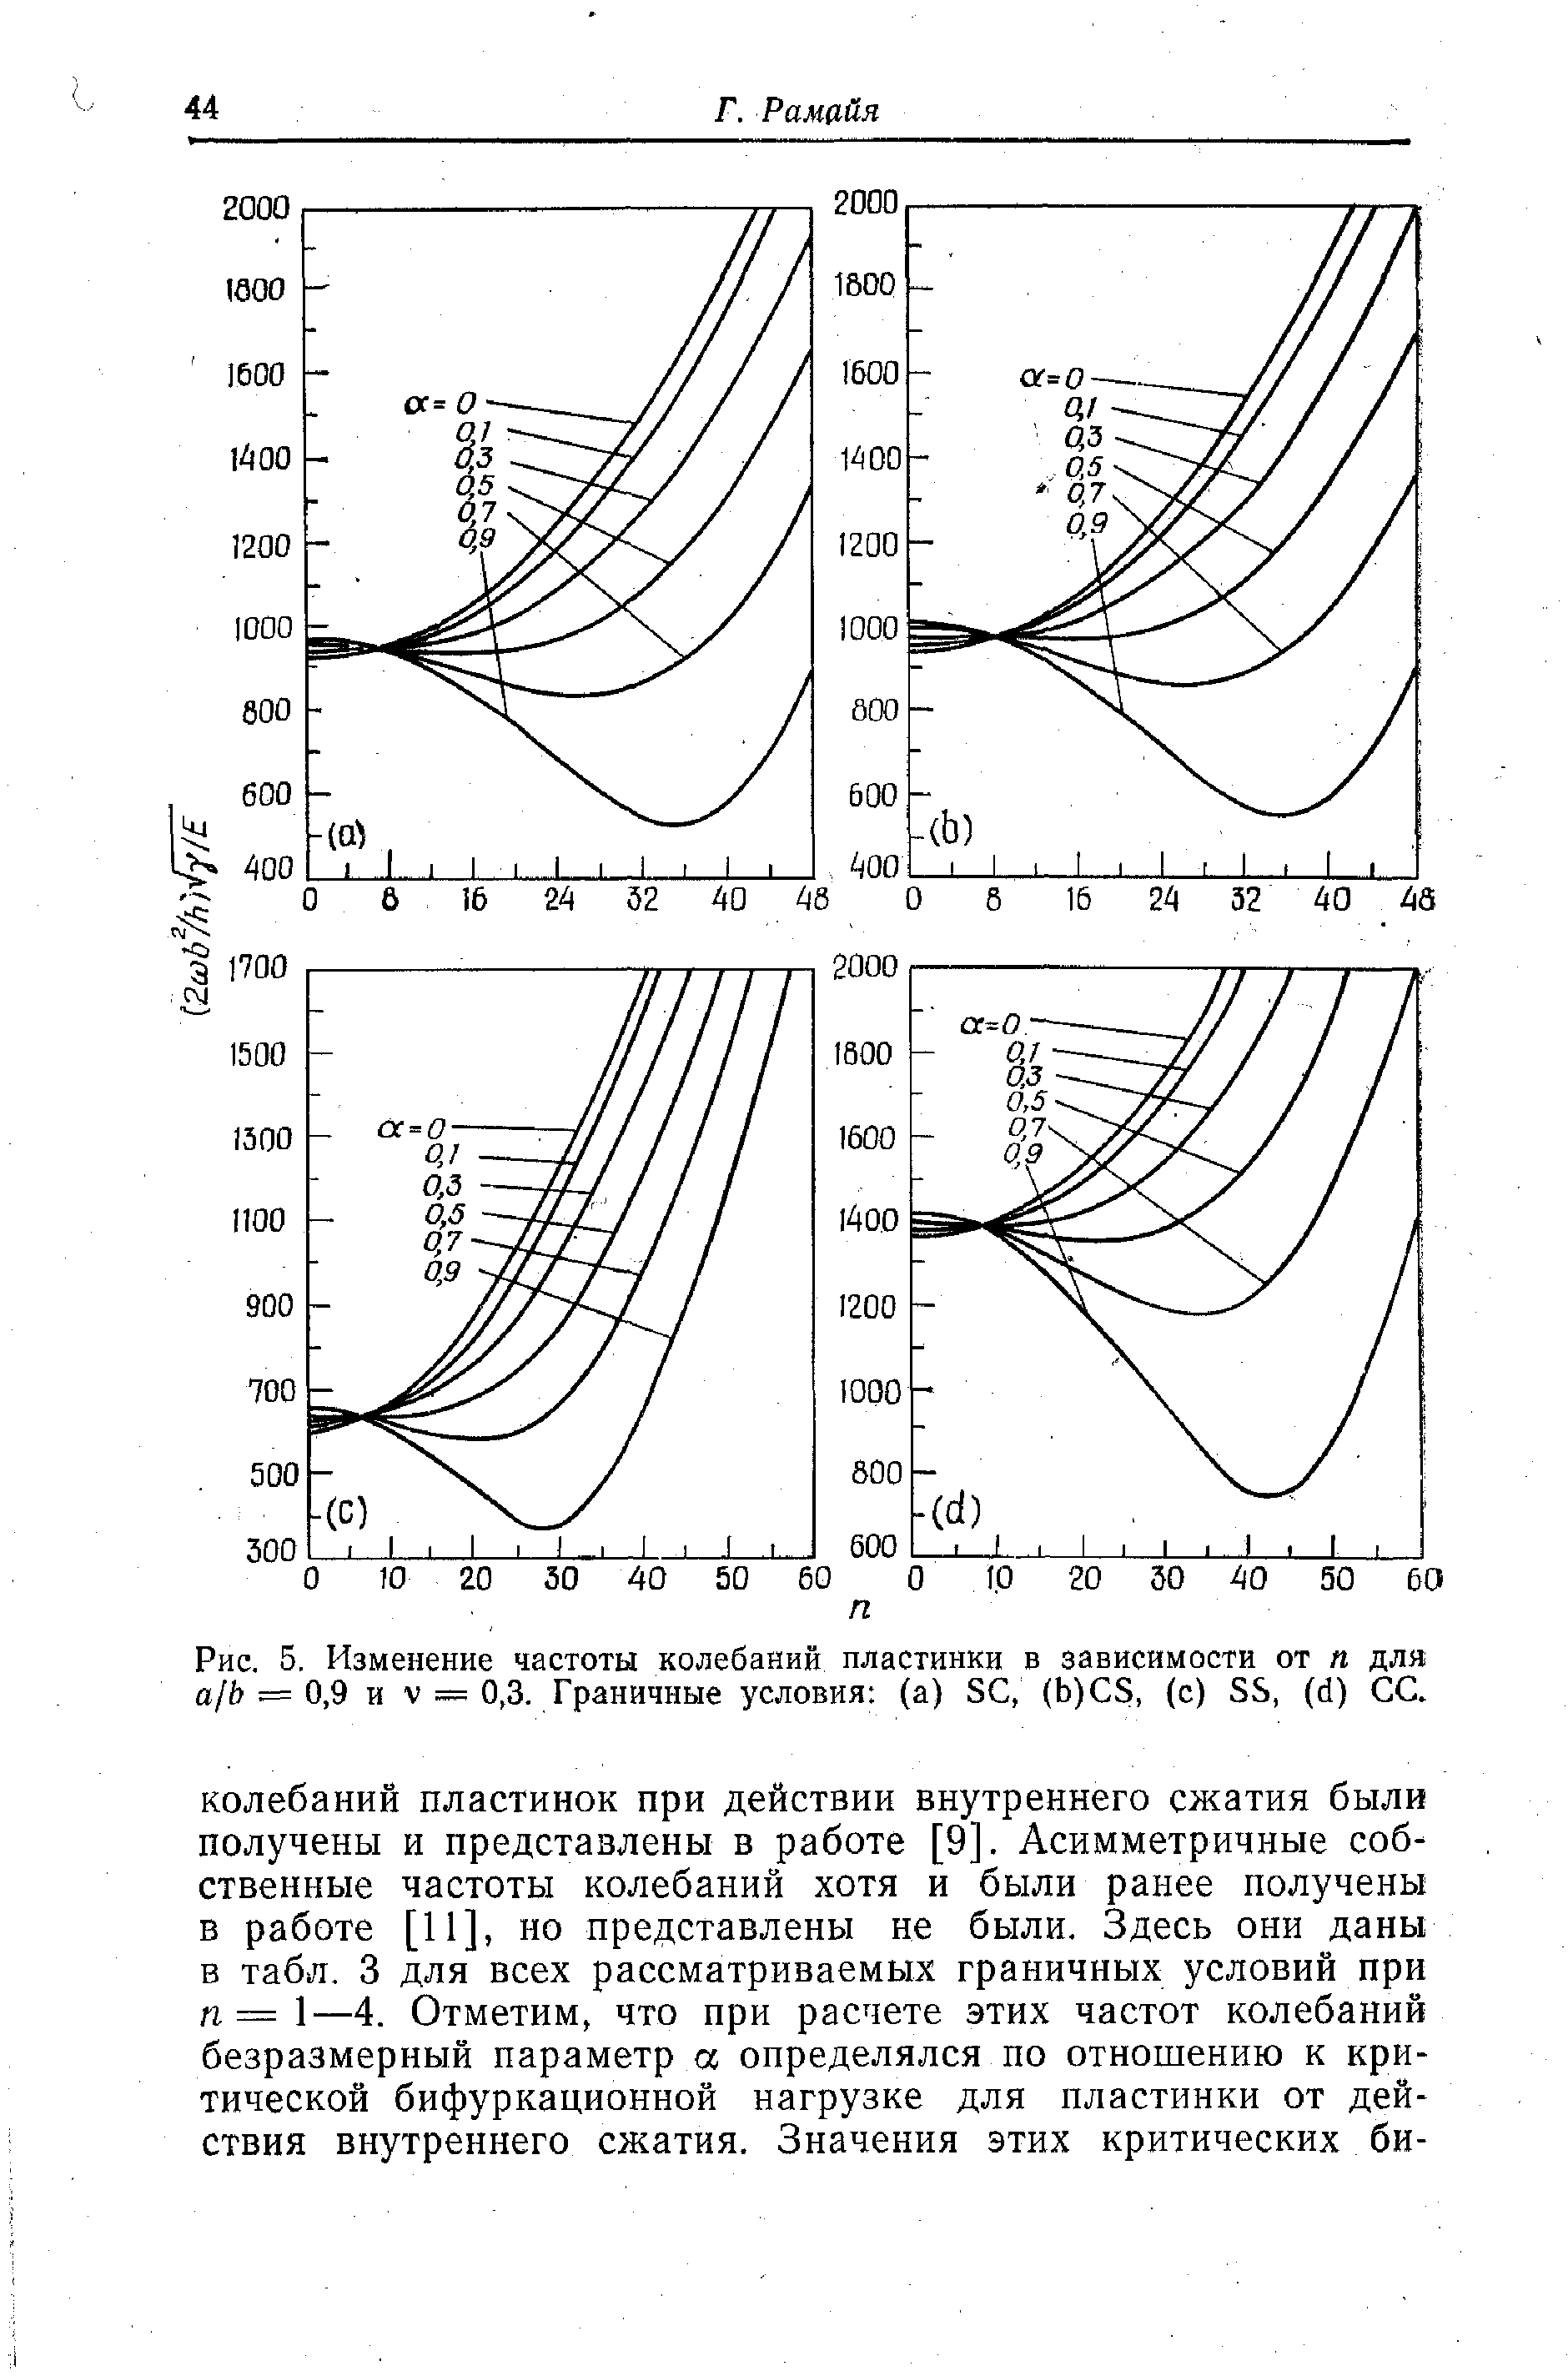 Рис. 5, Изменение частоты колебаний пластинки в зависимости от п для а/Ь — 0,9 и V = ОД Граничные условия (а) S , (b) S, (с) SS, (d) СС.
